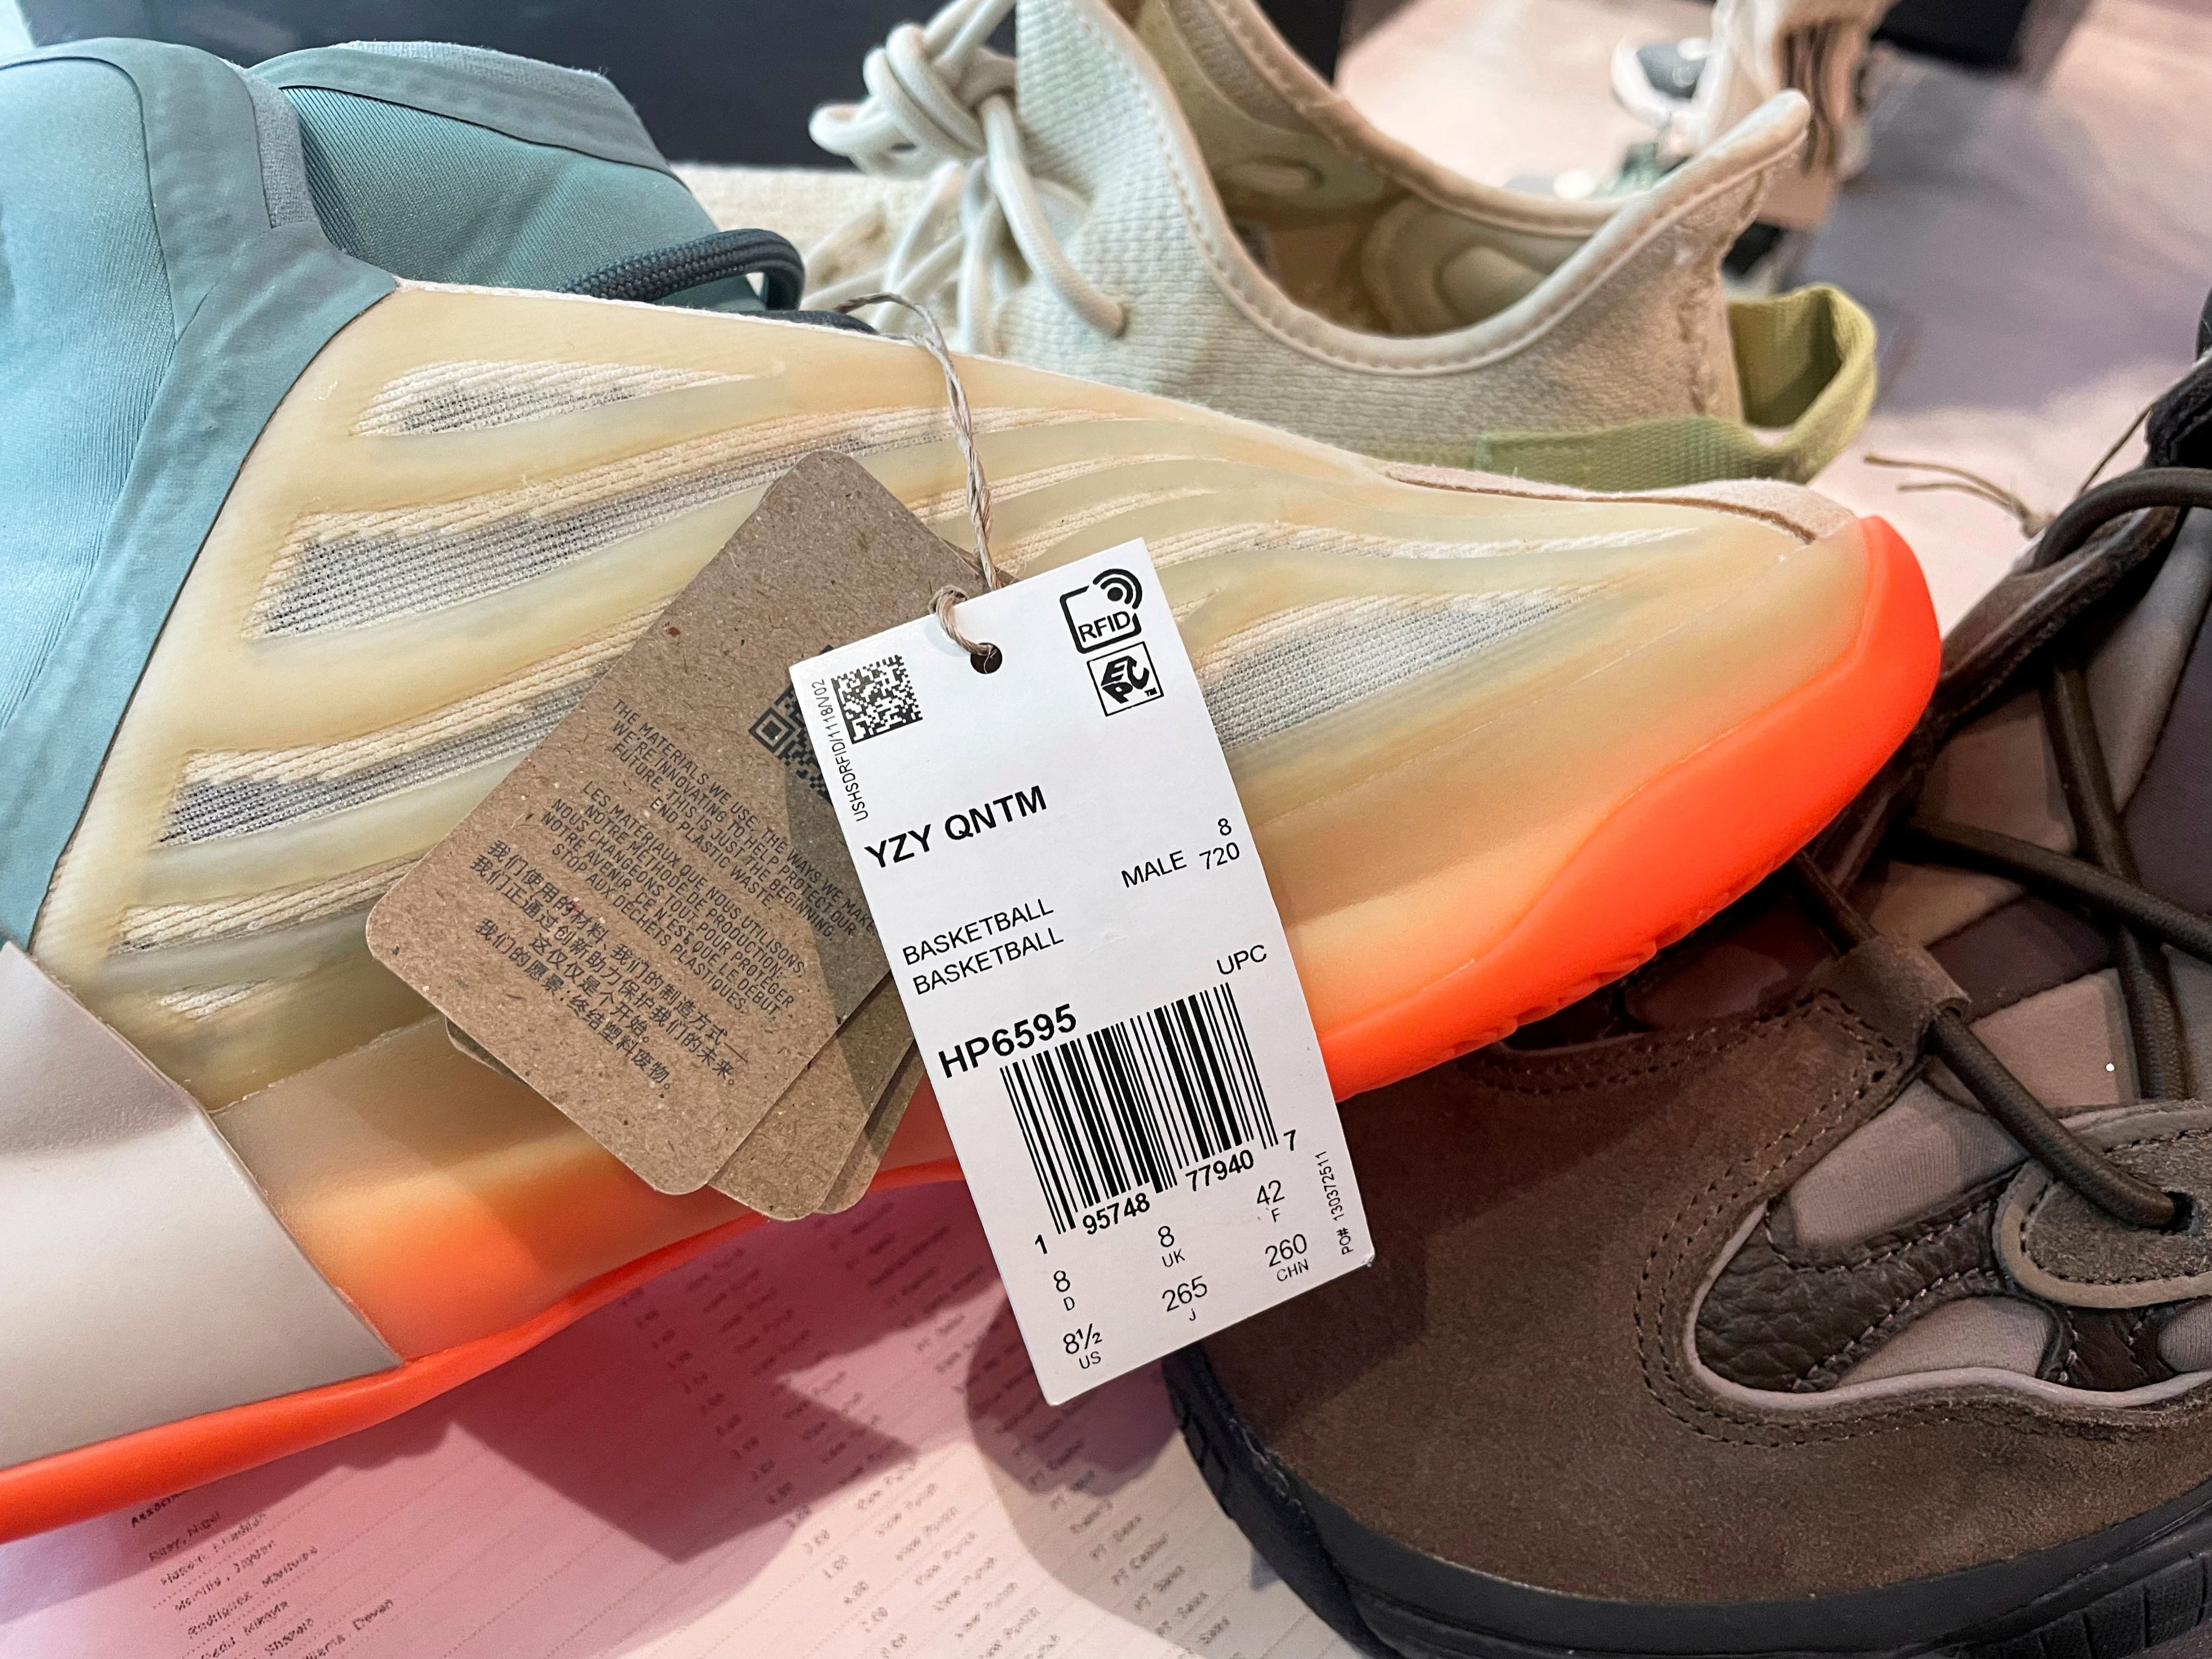 Adidas lanzará un segundo lote de zapatillas Yeezy de alta gama después la ruptura con Kanye West - Infobae